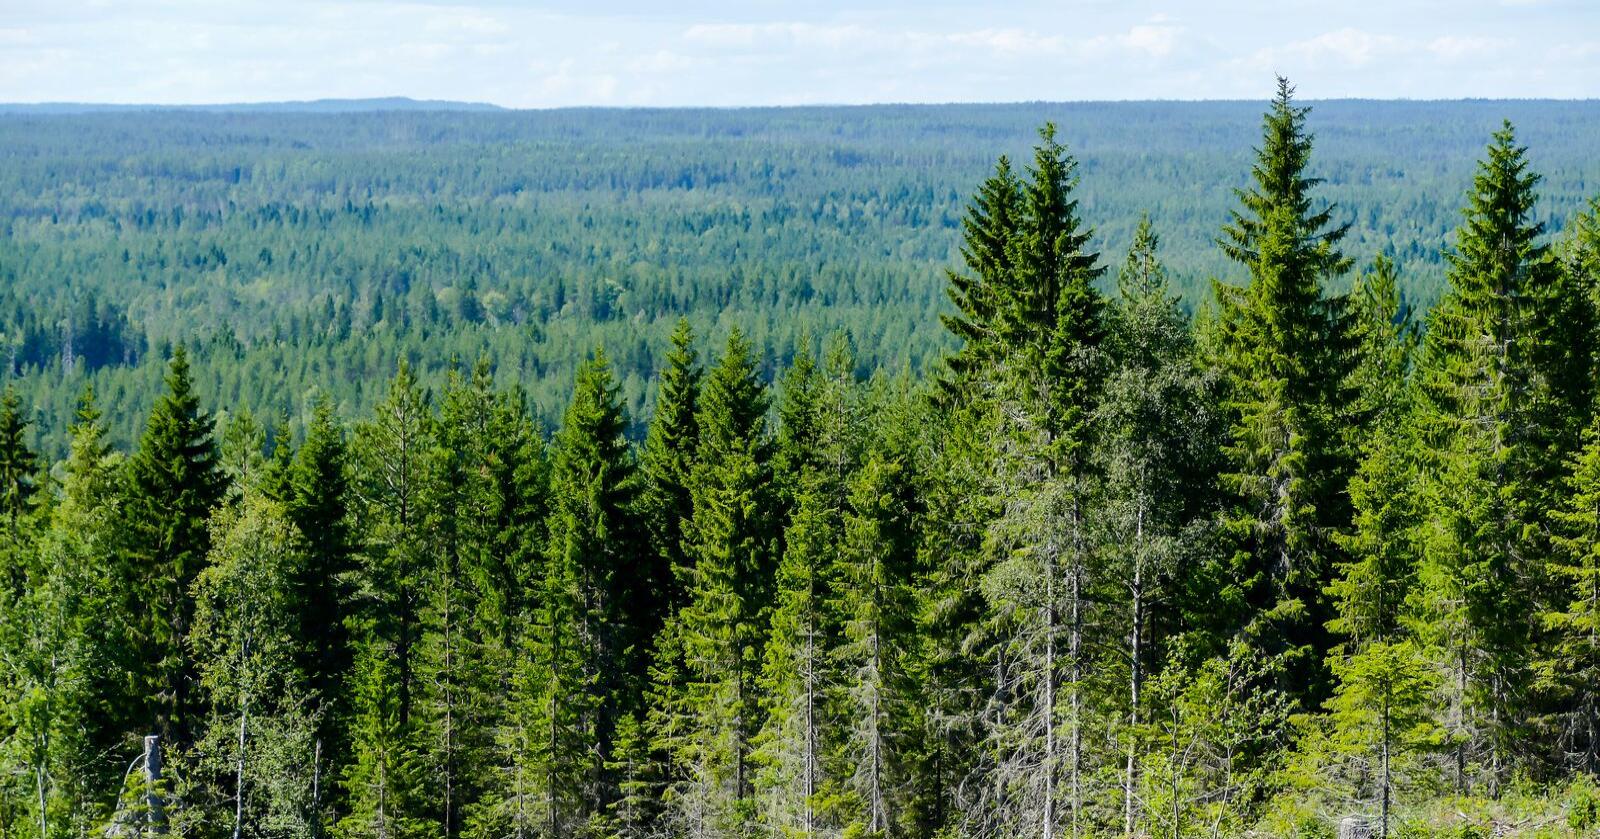 EU vedtok forrige uke utkast til nytt regelverk for bioenergi. Dette mener Norges Skogeierforbund vil legge bånd på norsk skogbruk. Foto: Mostphotos